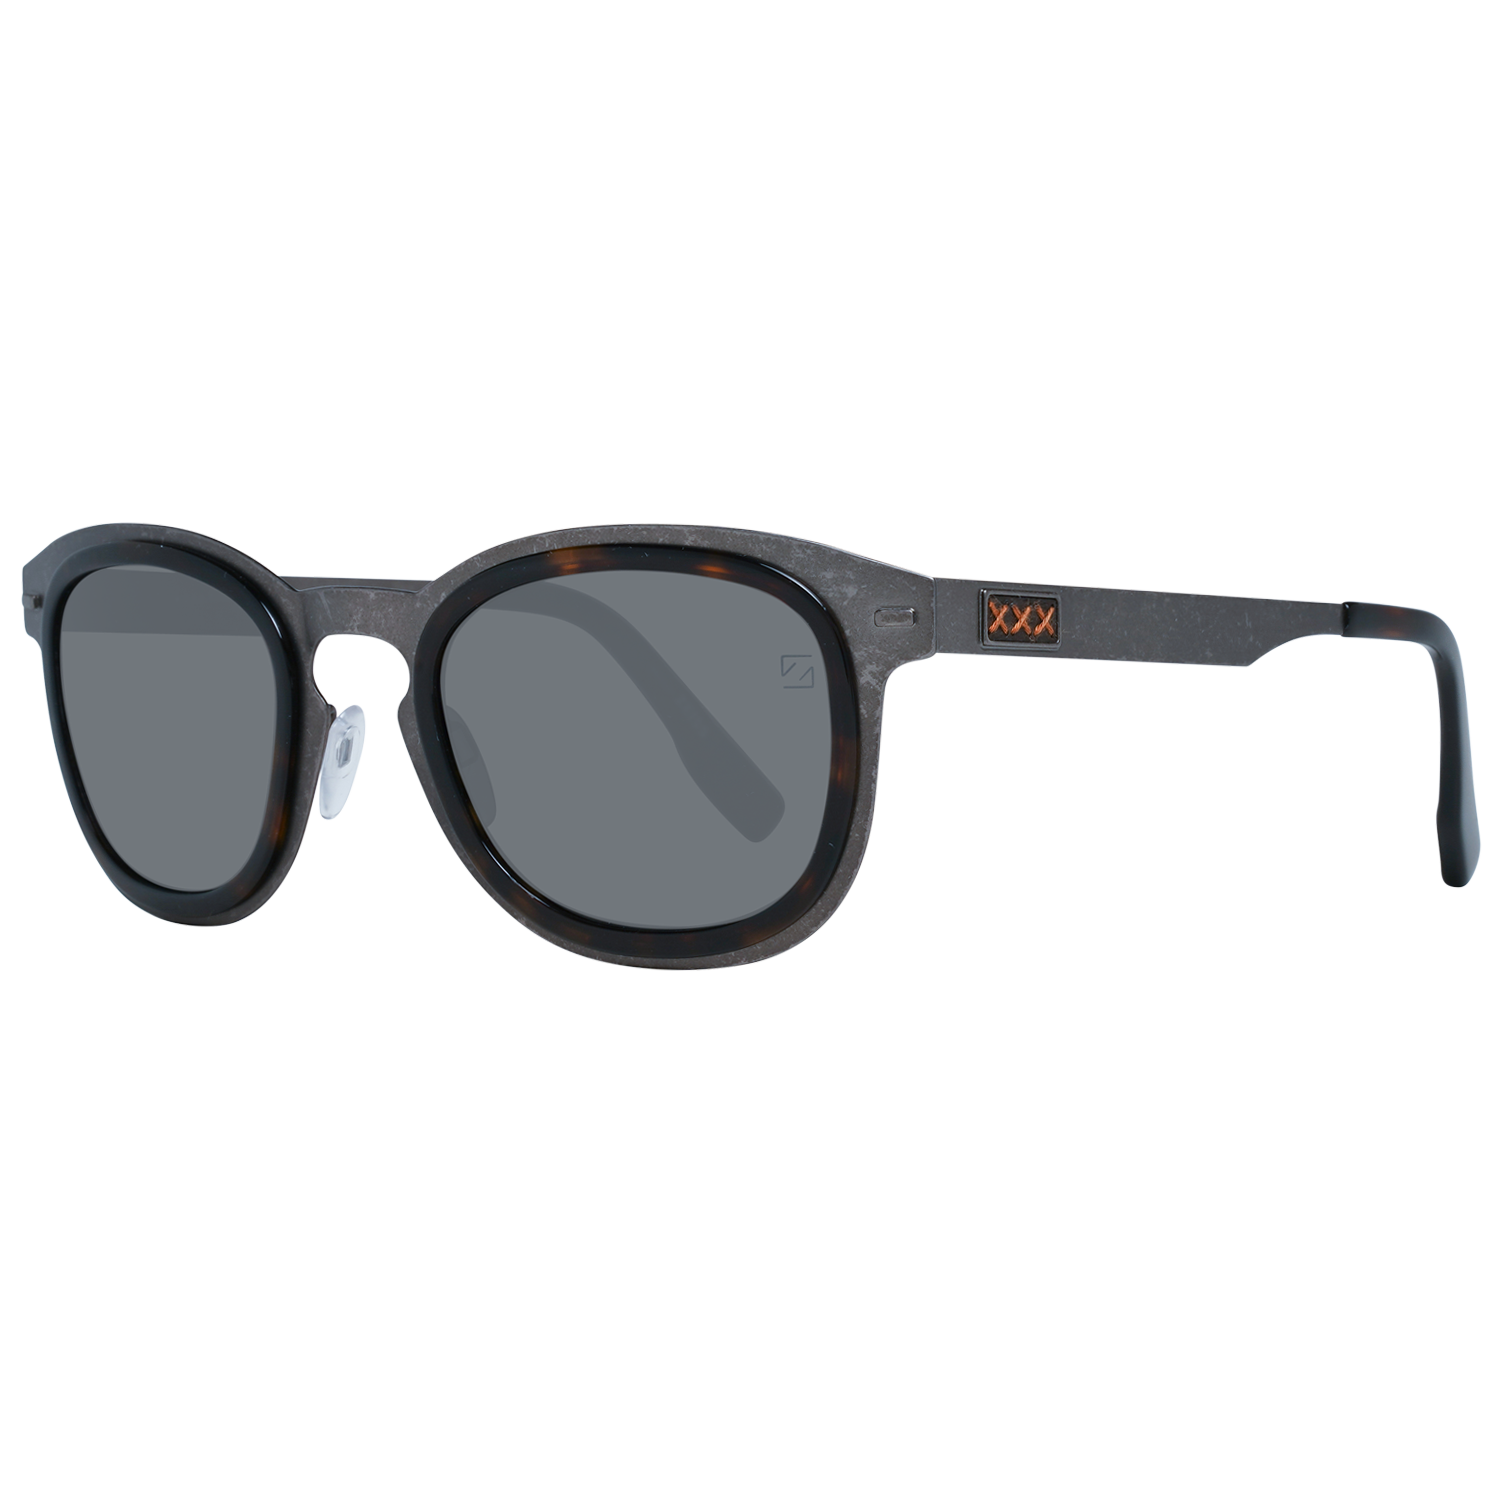 Zegna Couture Sunglasses Zegna Couture Sunglasses ZC0007 50 20D Titanium Eyeglasses Eyewear UK USA Australia 